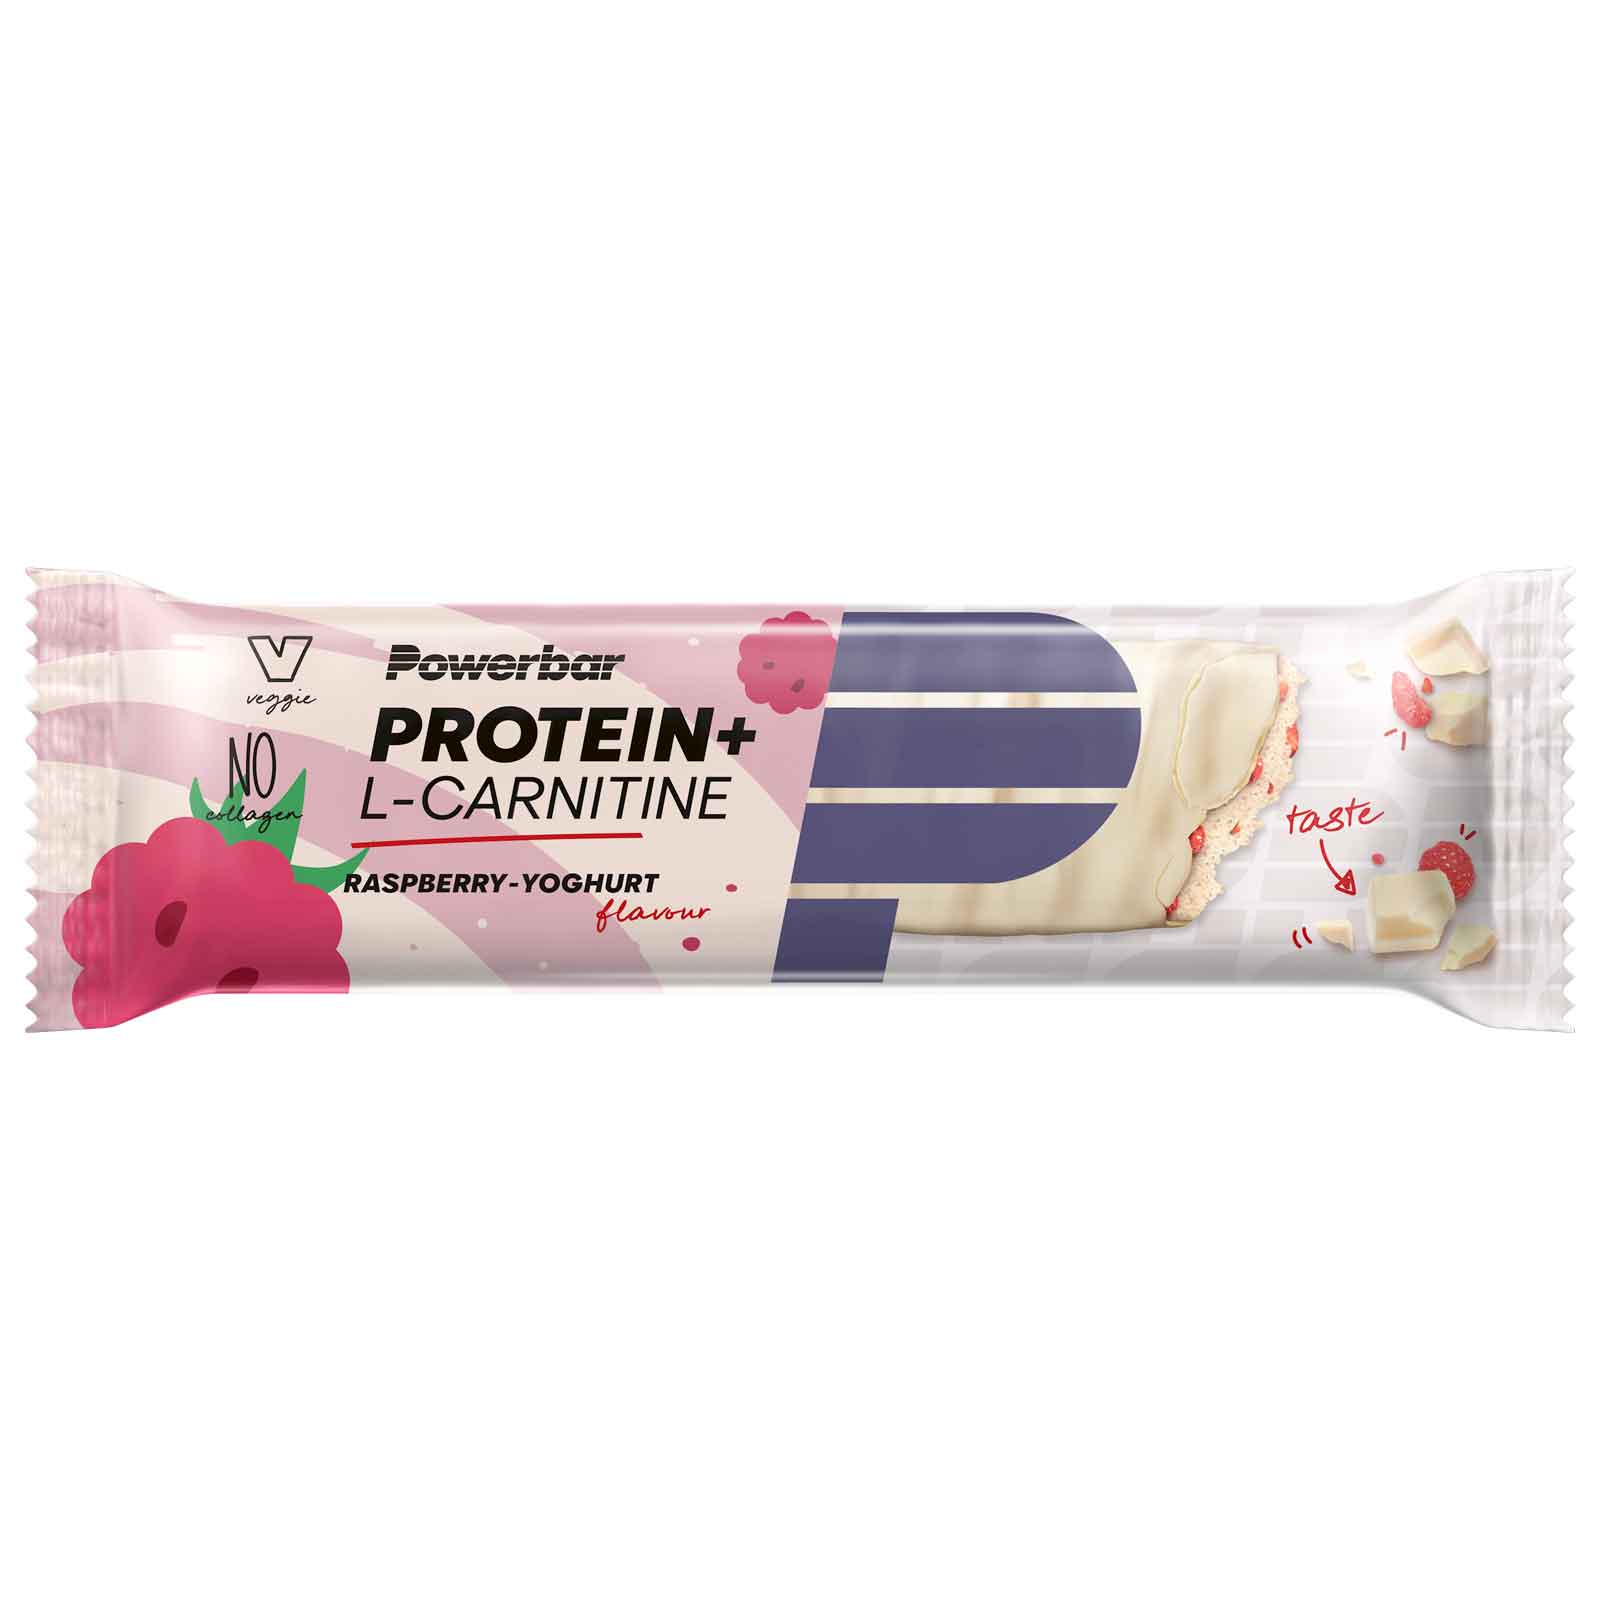 Produktbild von Powerbar Protein Plus L-Carnitine - Eiweiß-Riegel - 35g